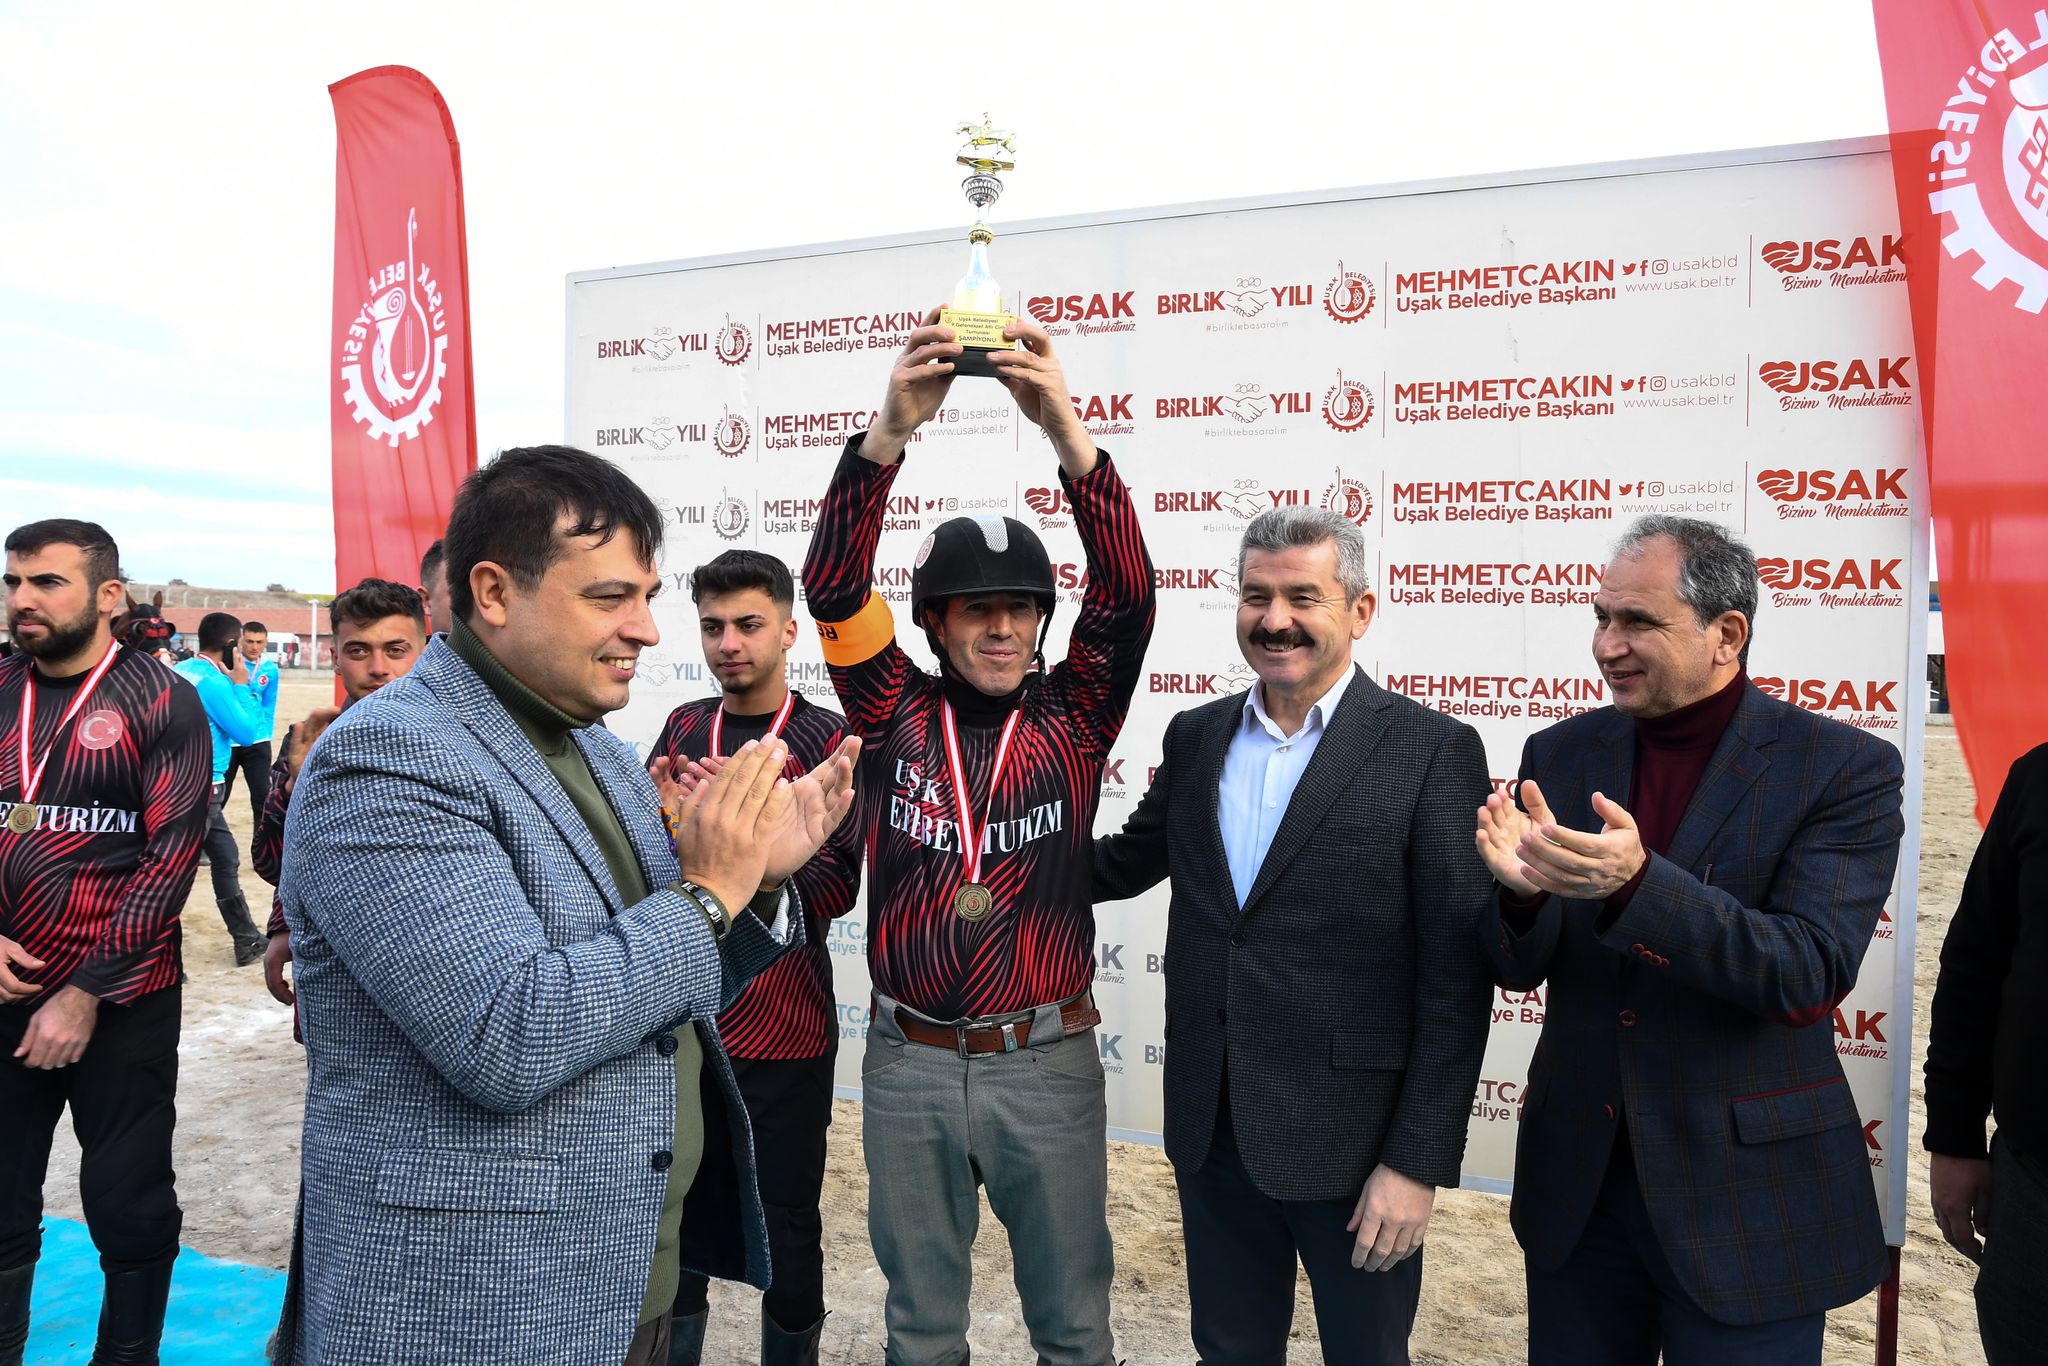 Gökçedal Atlı Cirit Spor Kulübü, Uşak Geleneksel Cirit Turnuvası'nı şampiyon olarak tamamladı.